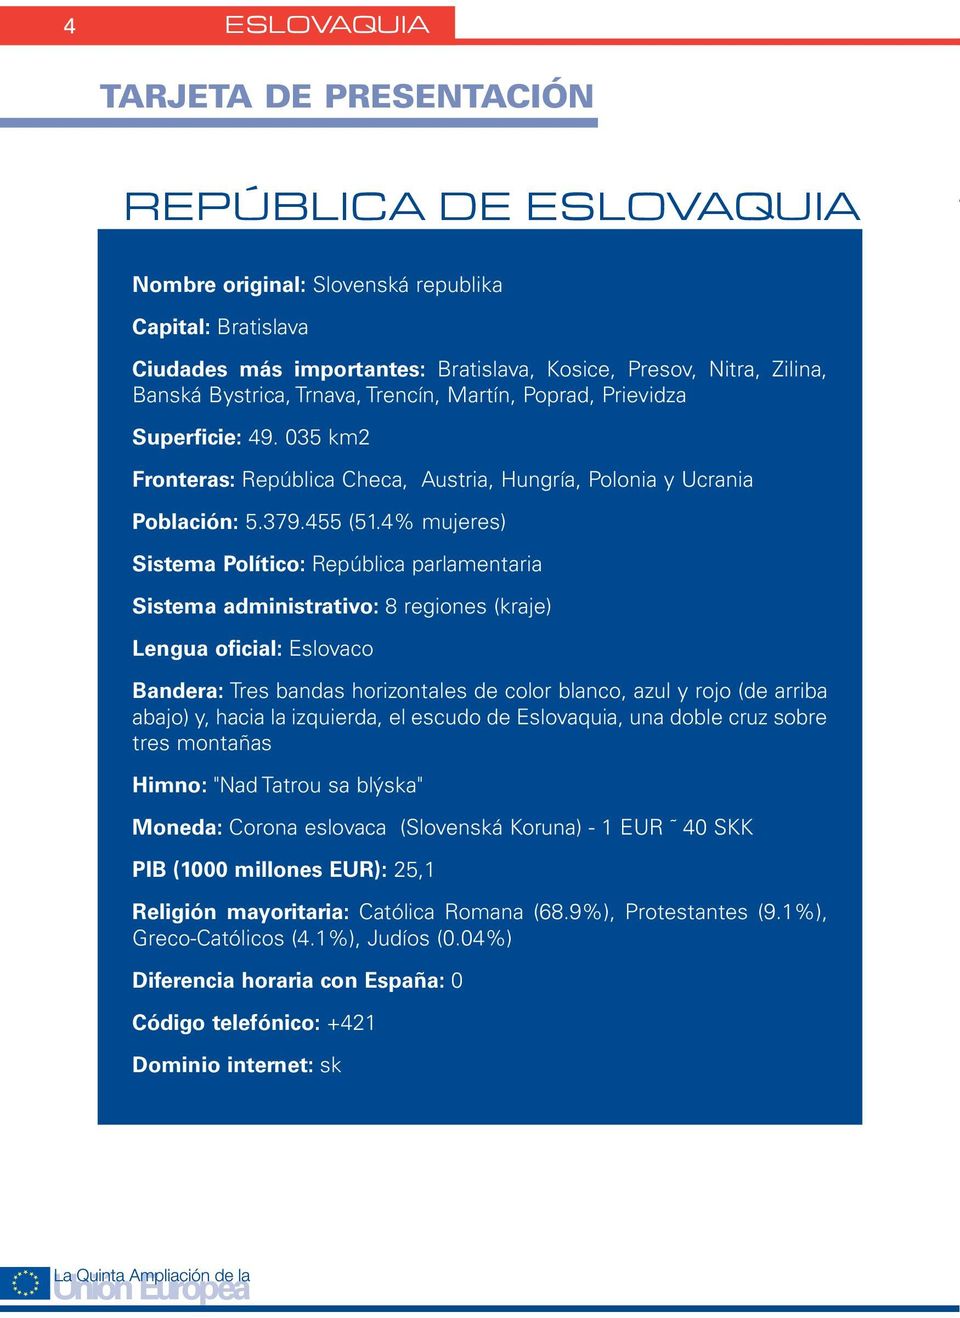 4% mujeres) Sistema Político: República parlamentaria Sistema administrativo: 8 regiones (kraje) Lengua oficial: Eslovaco Bandera: Tres bandas horizontales de color blanco, azul y rojo (de arriba